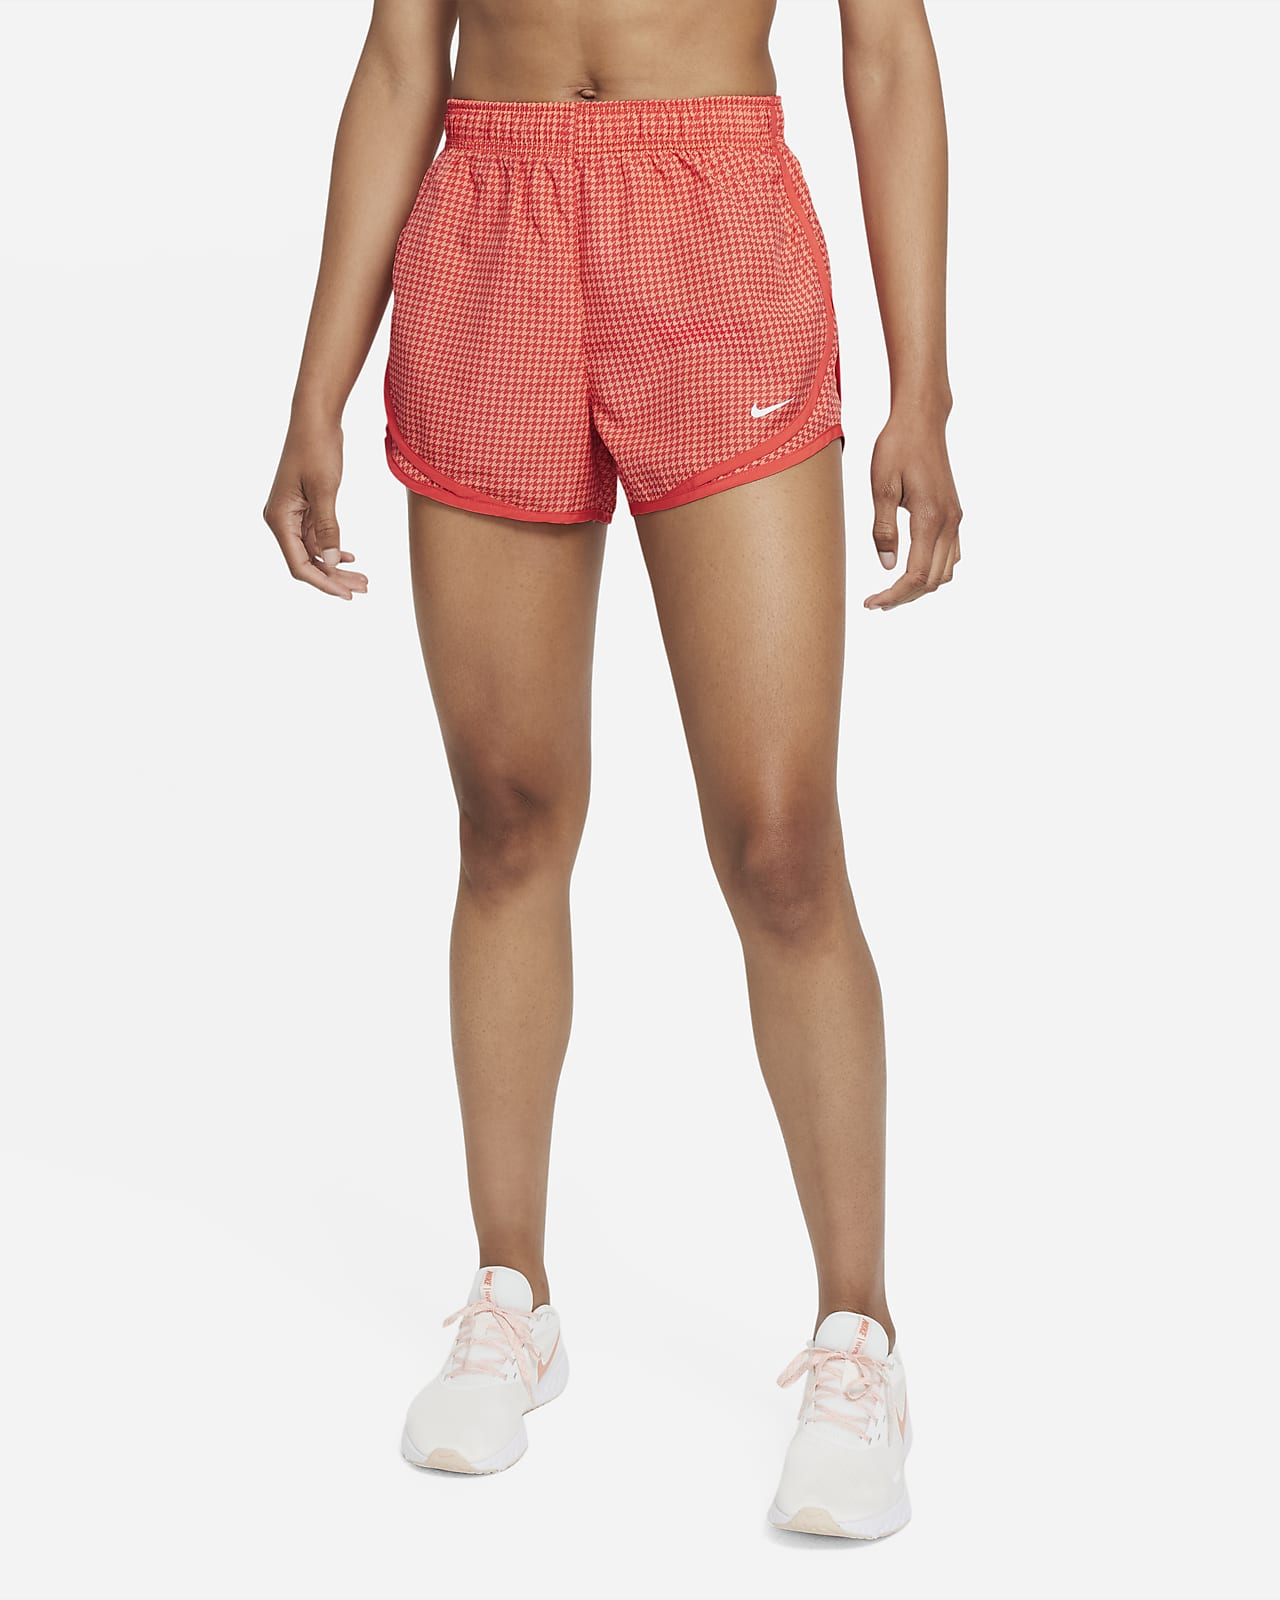 Pantalones cortos para correr con estampado de pata de gallo para mujer Dri-FIT Tempo Icon Clash. Nike.com